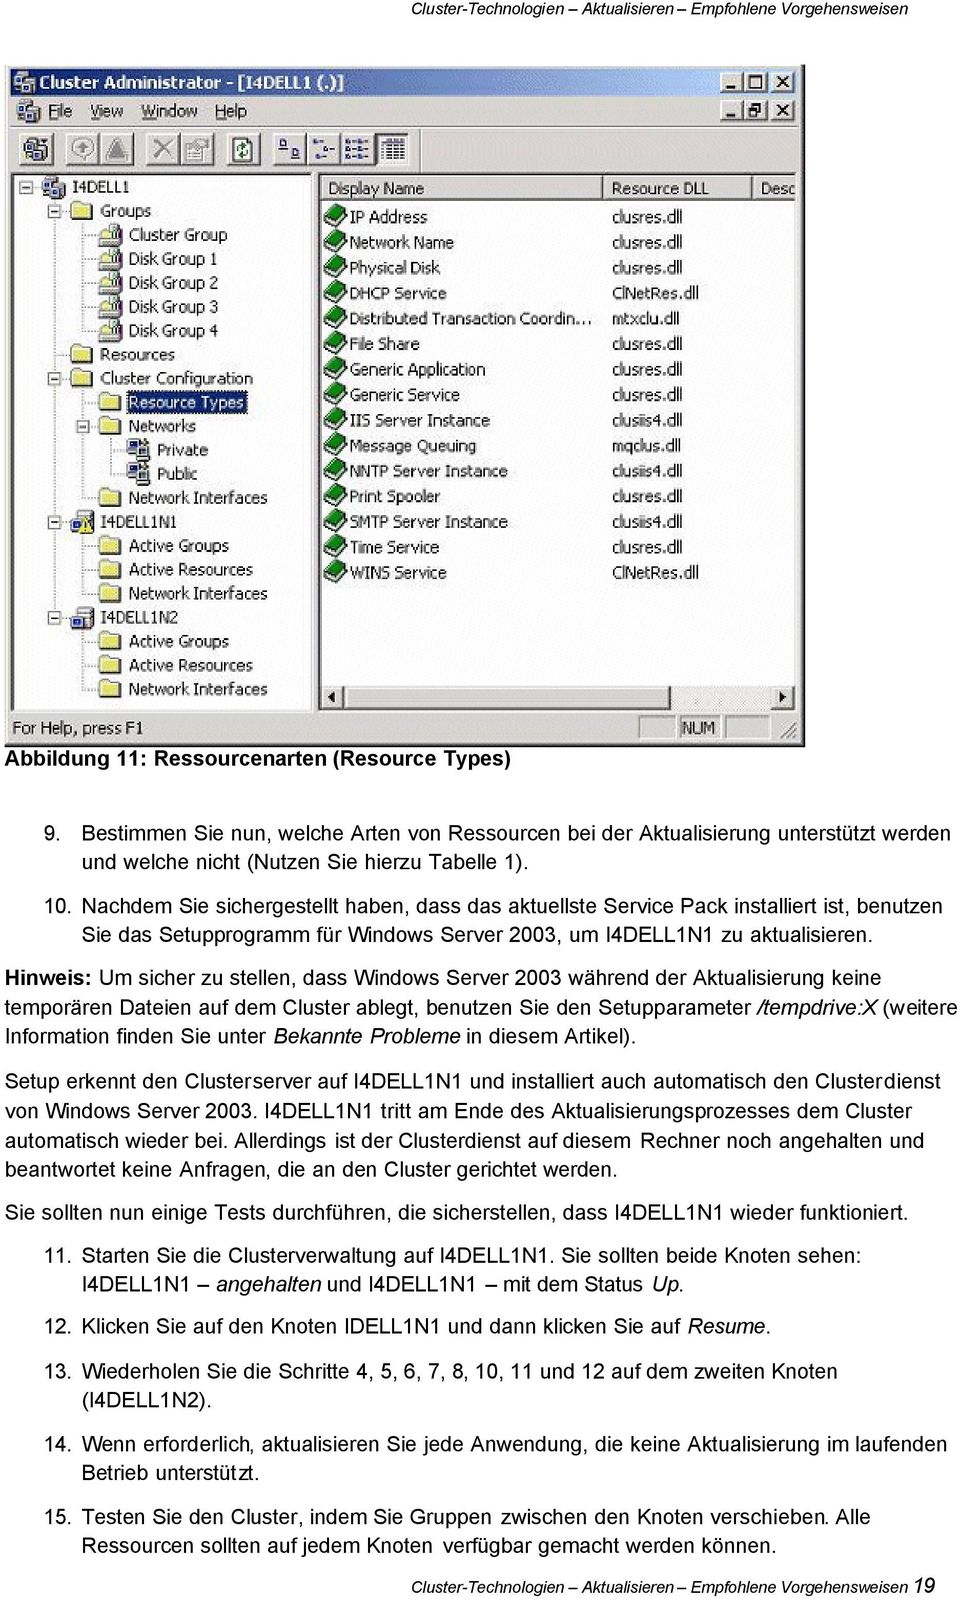 Hinweis: Um sicher zu stellen, dass Windows Server 2003 während der Aktualisierung keine temporären Dateien auf dem Cluster ablegt, benutzen Sie den Setupparameter /tempdrive:x (weitere Information